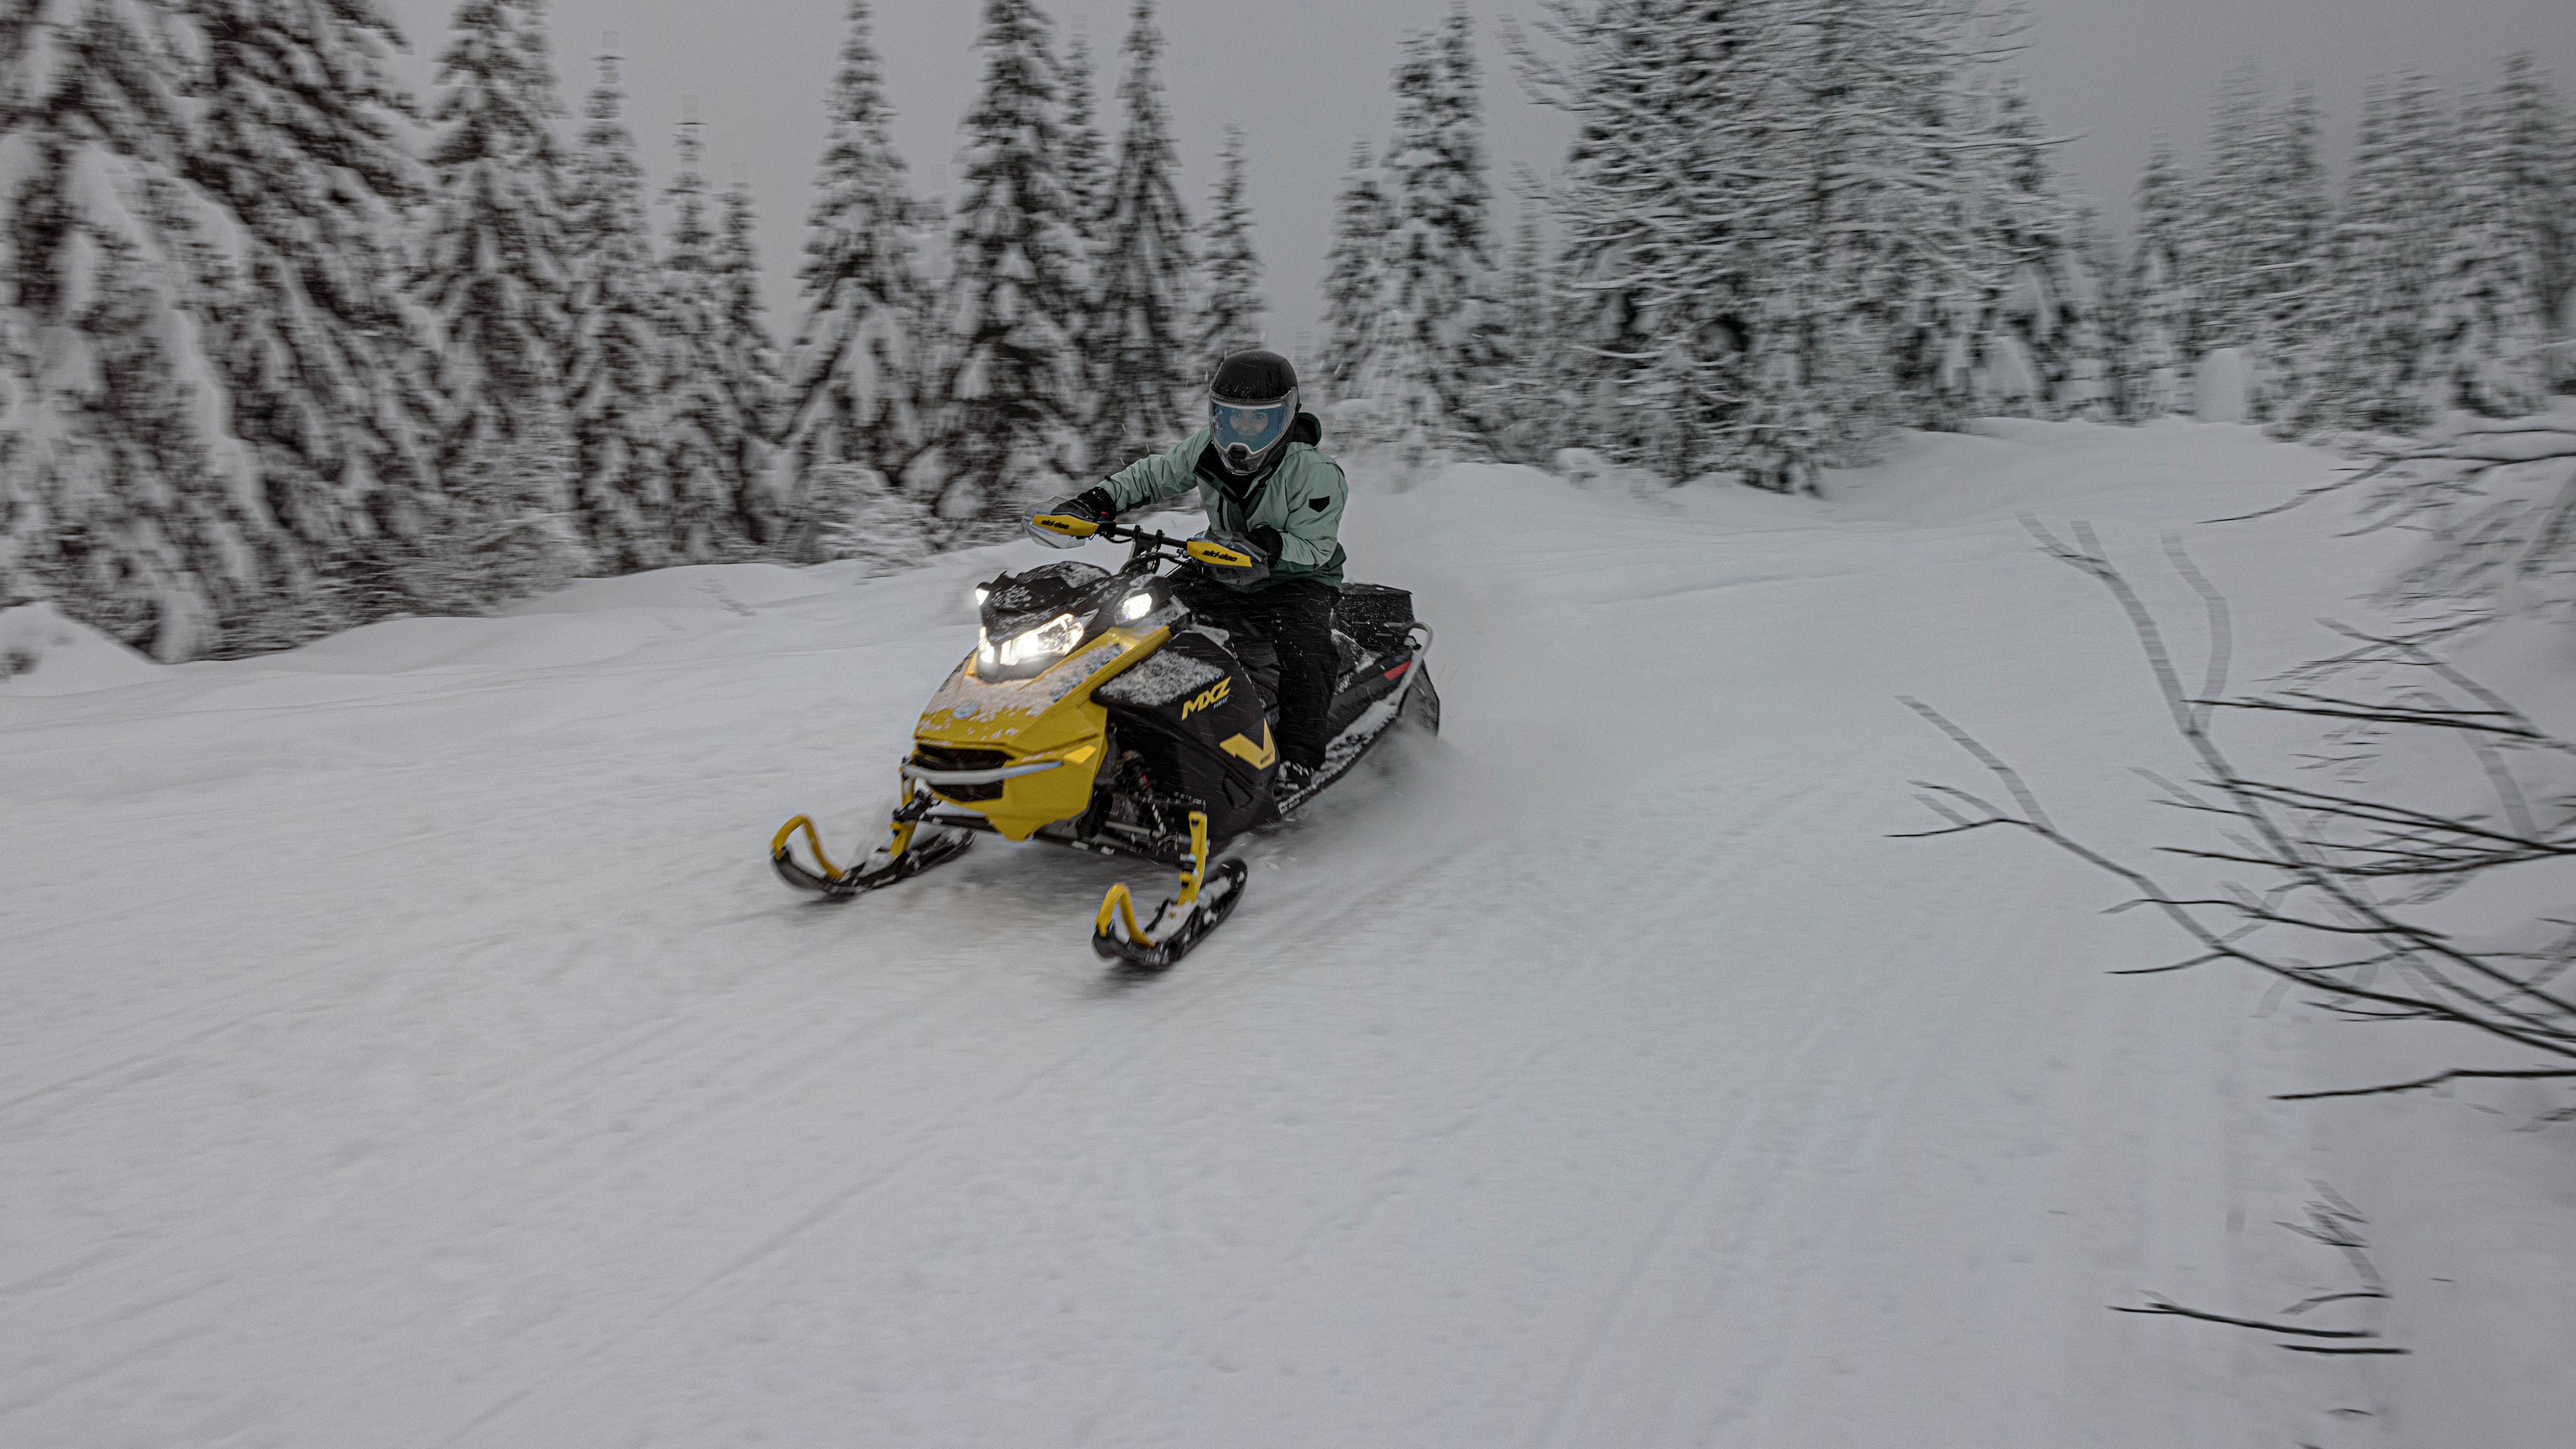 2025 Ski-Doo MXZ NEO riding through a snowy trail